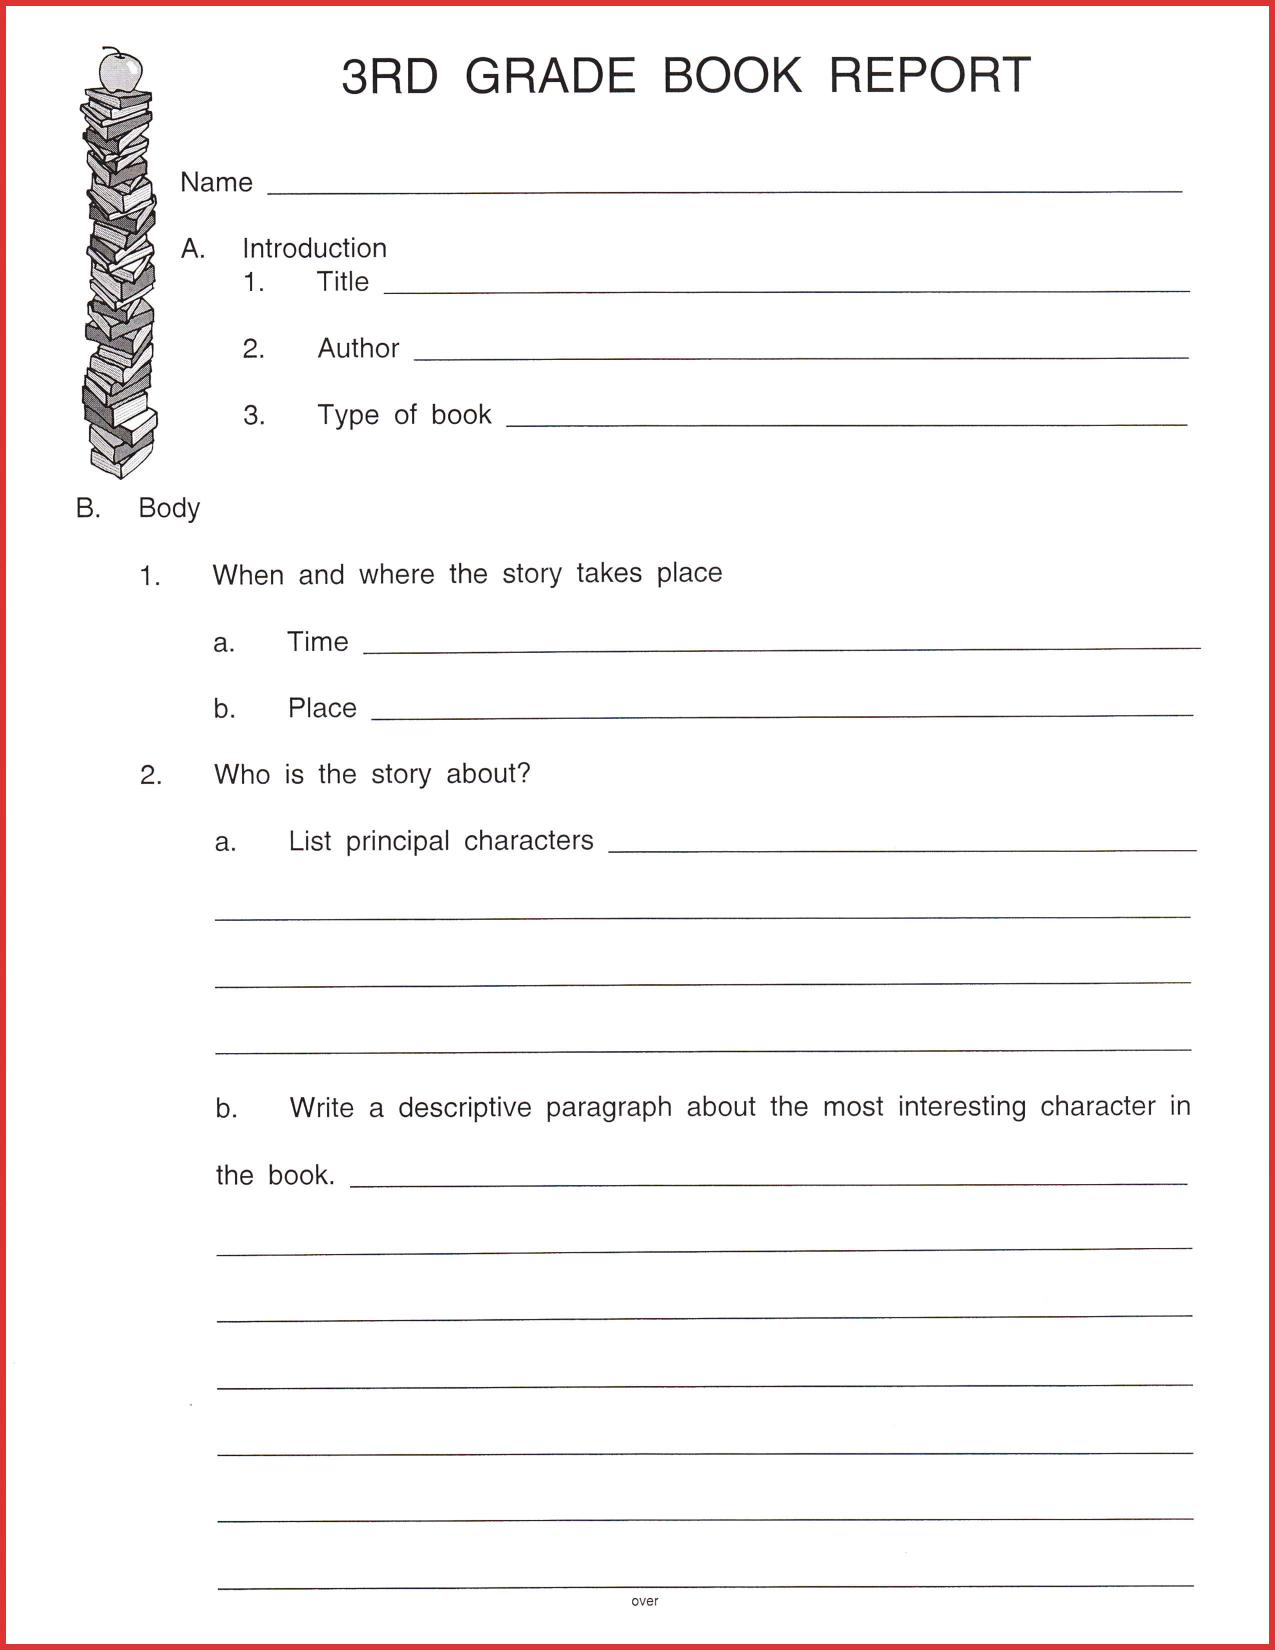 Fresh 3Rd Grade Book Report Template | Job Latter Within 1St Grade Book Report Template